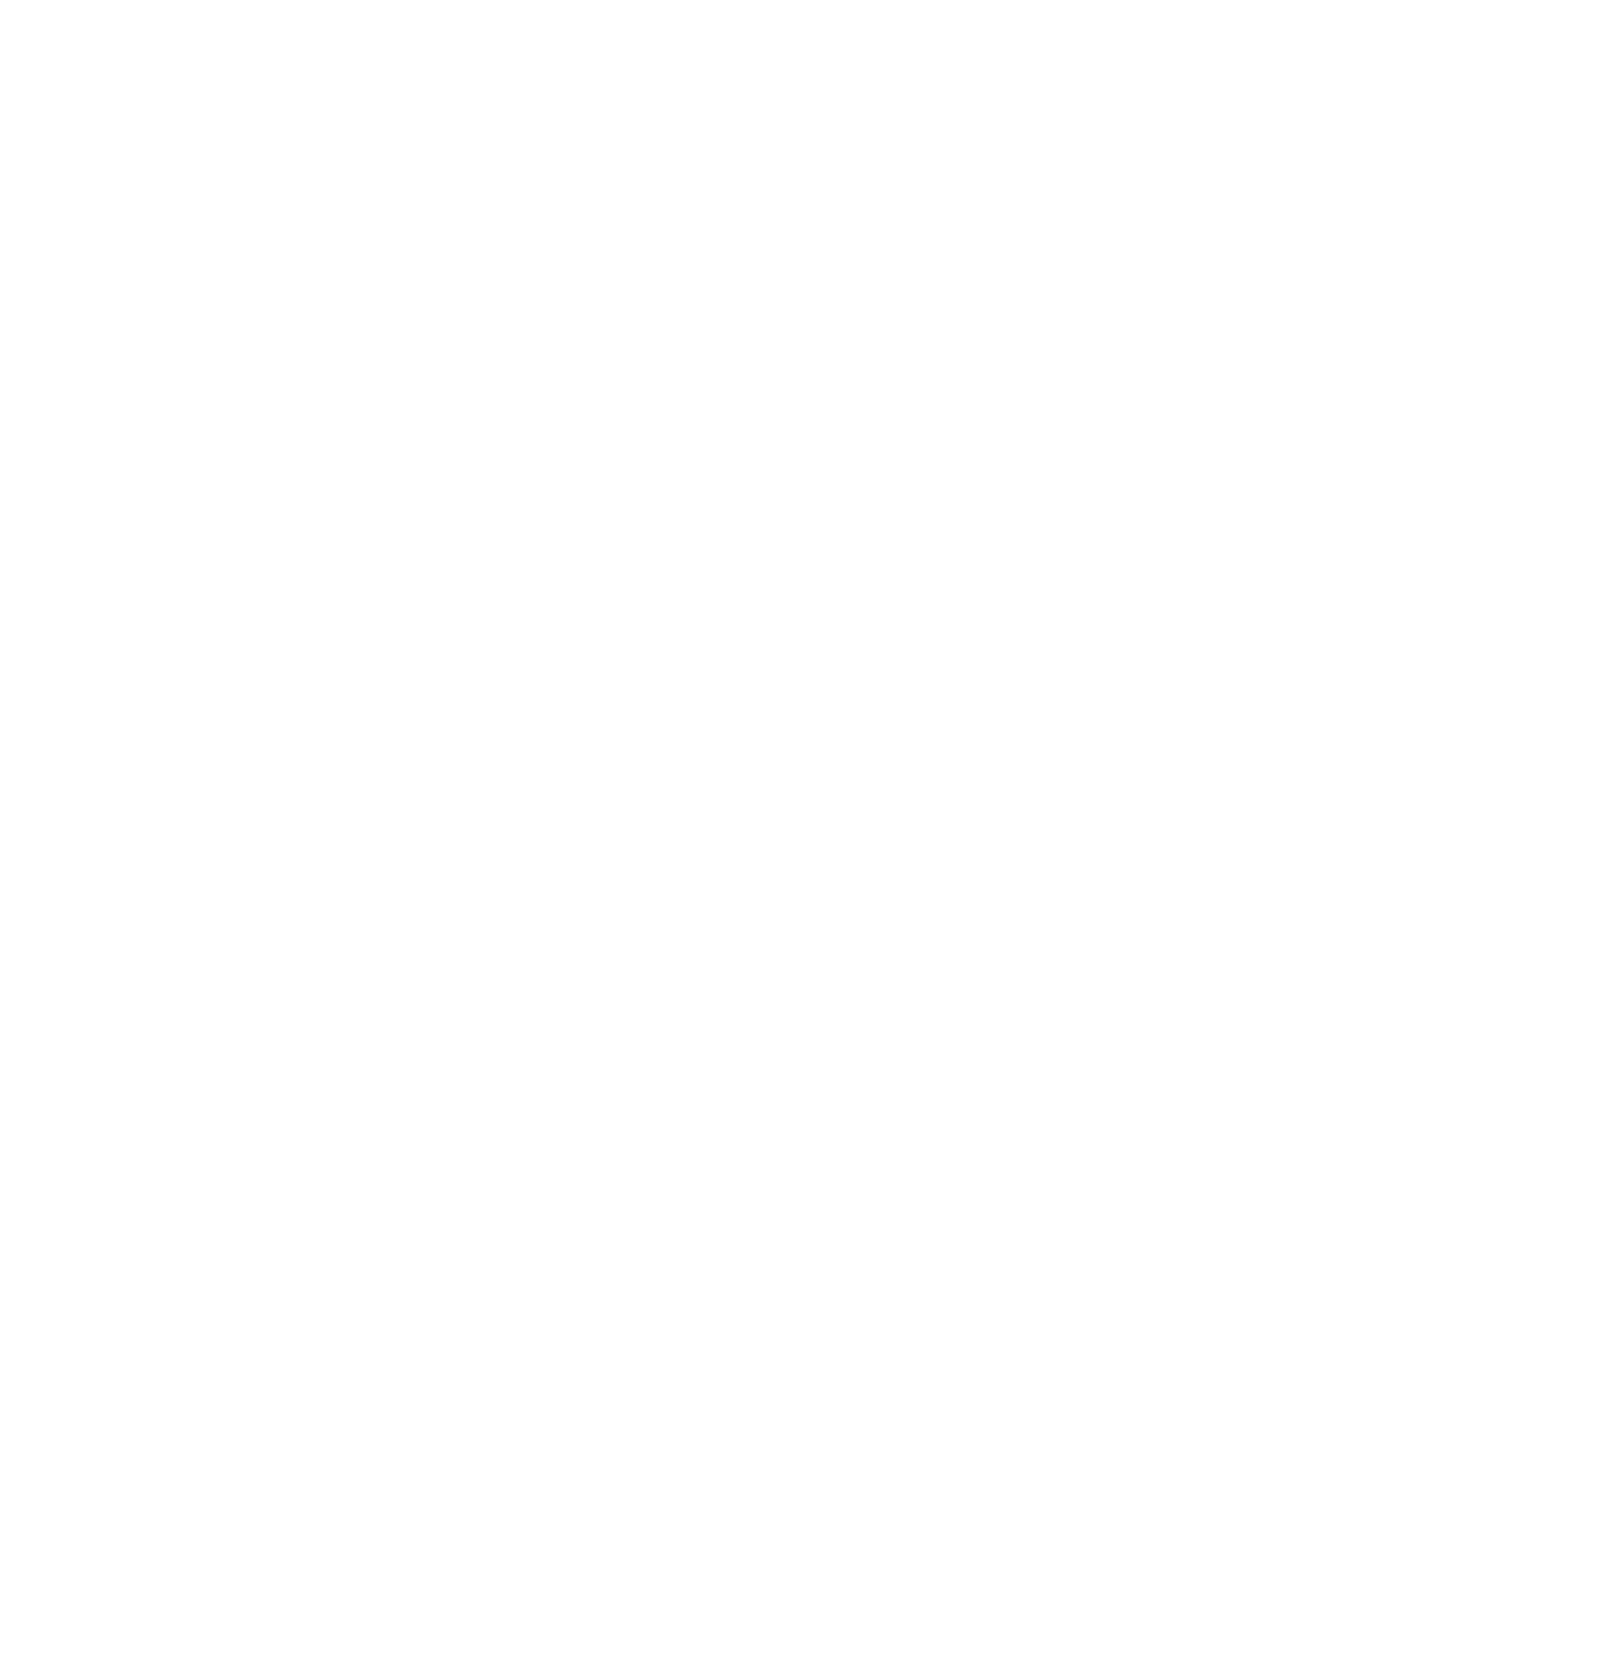 The One Club for Creativity Denver